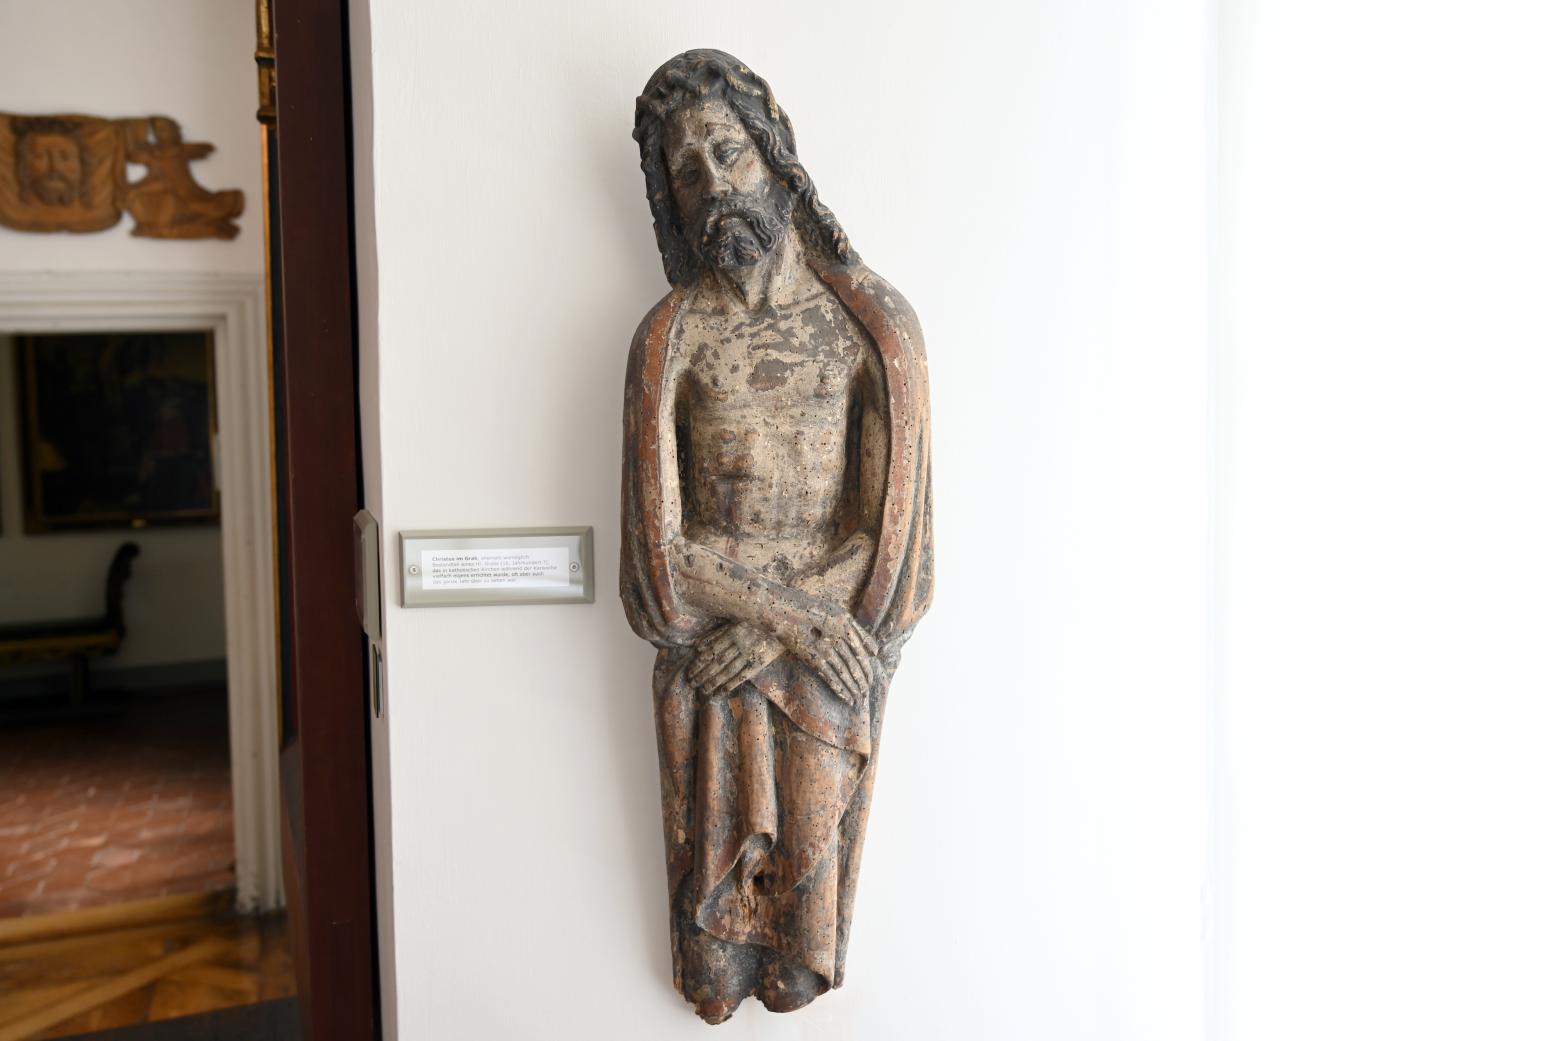 Christus im Grab, Überlingen, Städtisches Museum, Gotisches Zimmer, 16. Jhd., Bild 1/2